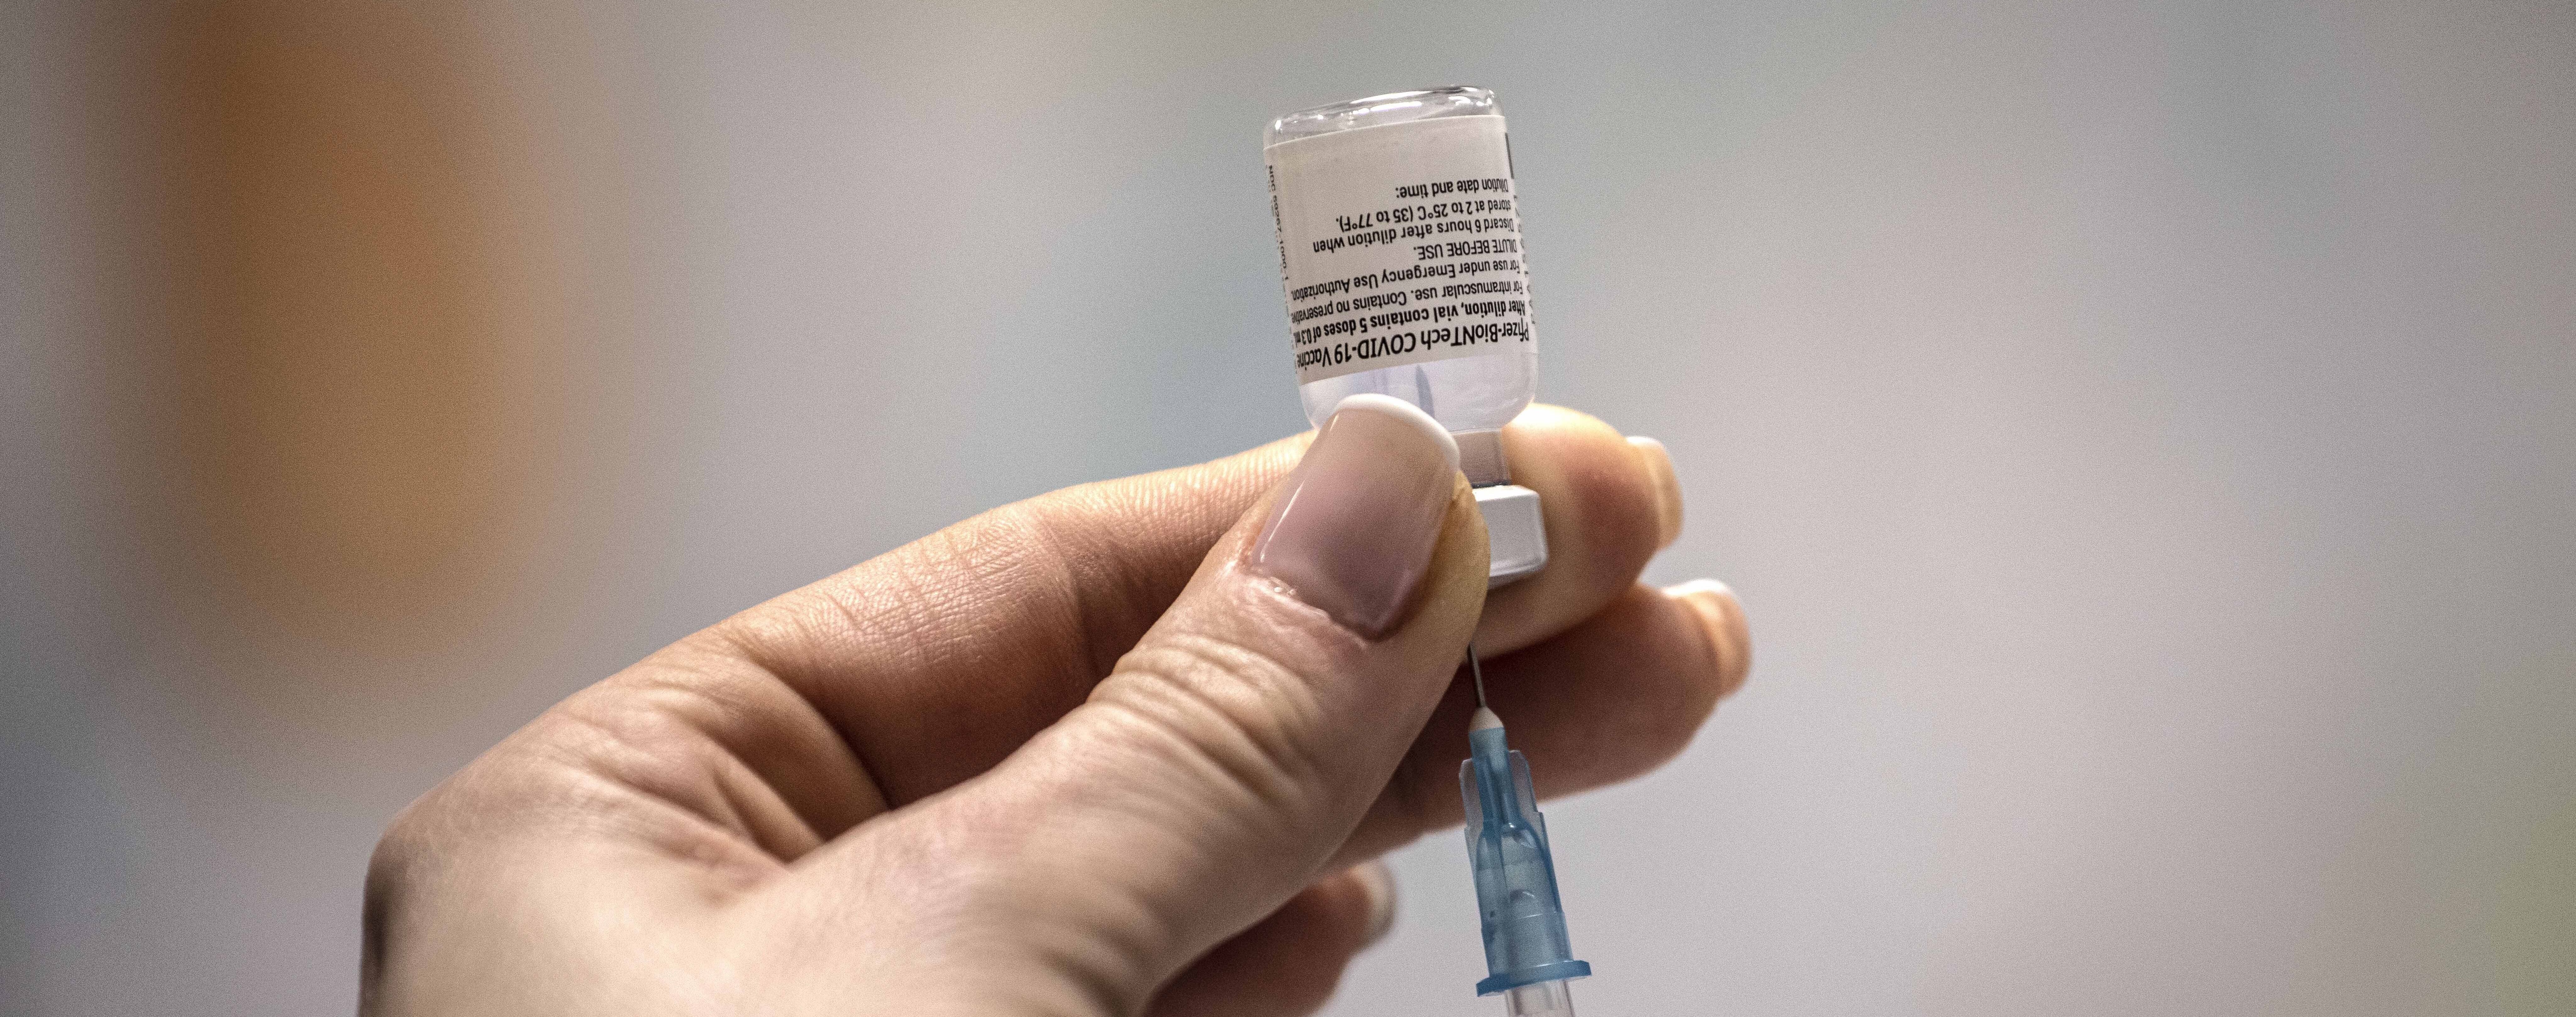 Украина впервые подписала контракт о поставках 1,9 млн дополнительных доз вакцины против коронавируса